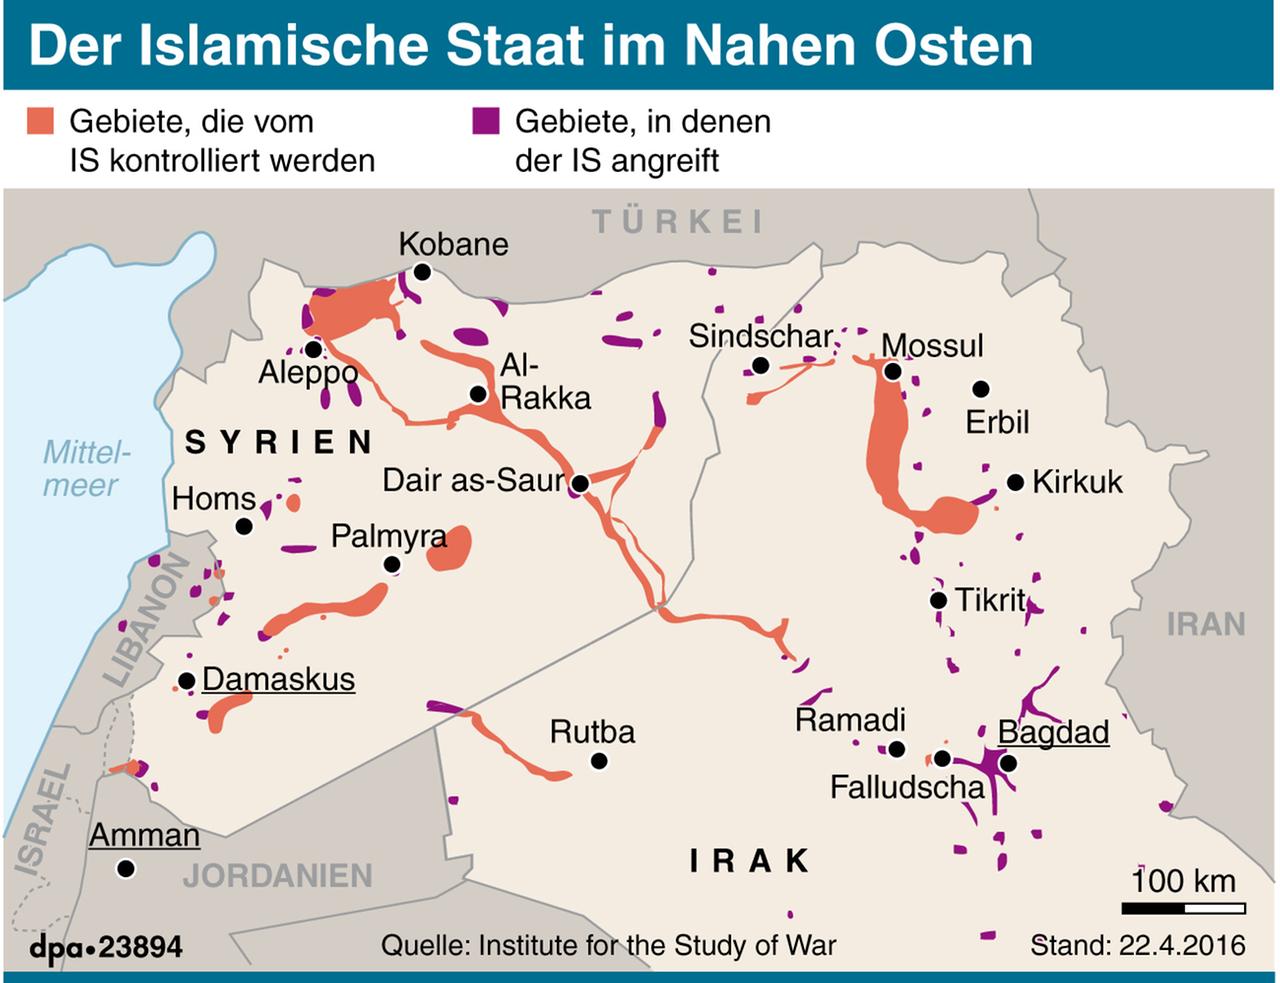 Der Islamische Staat im Nahen Osten (Stand: 25.04.2016)